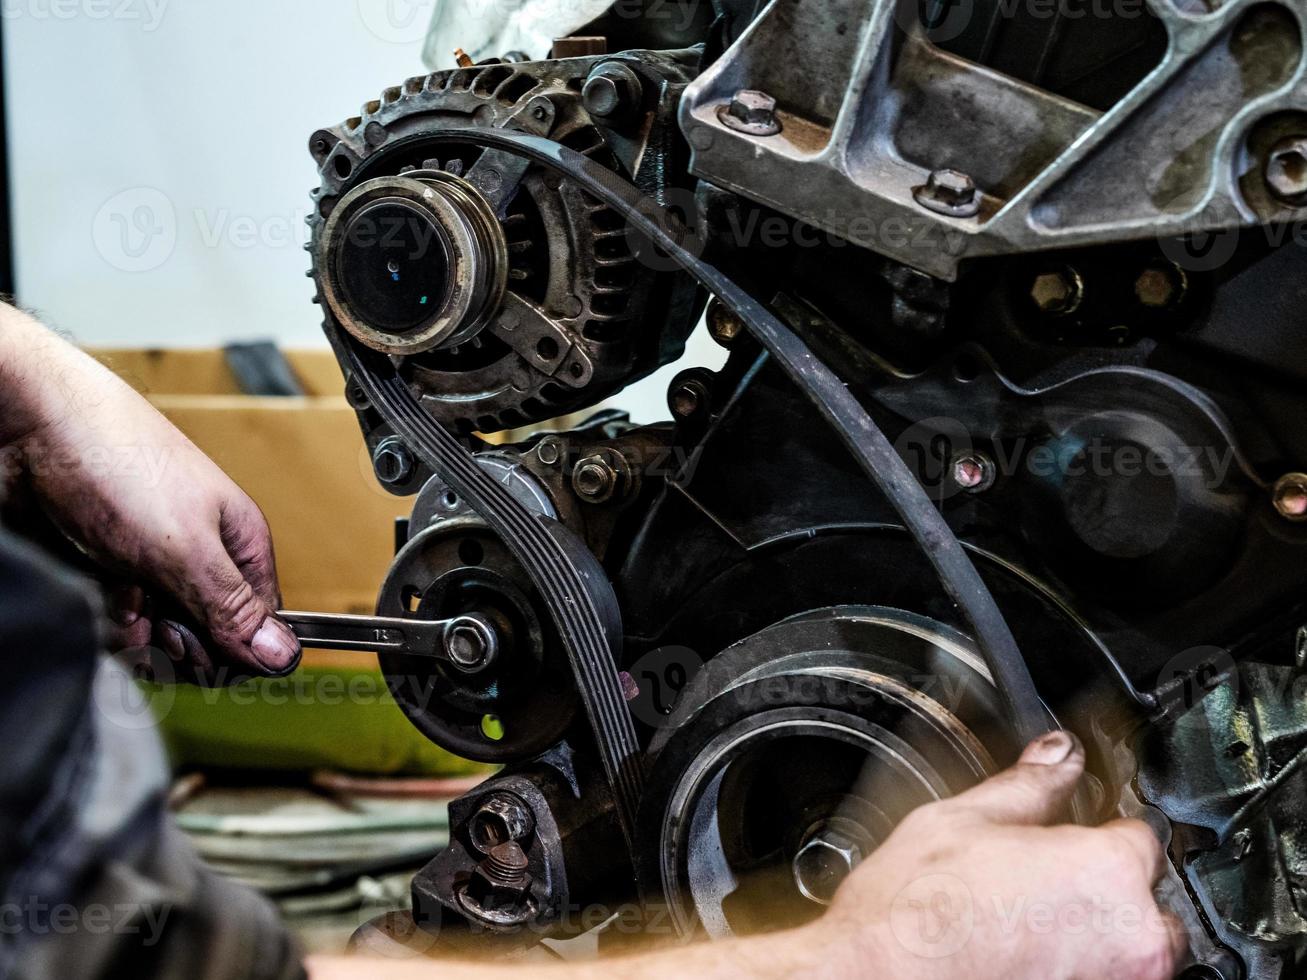 réparer un moteur diesel à combustion interne photo